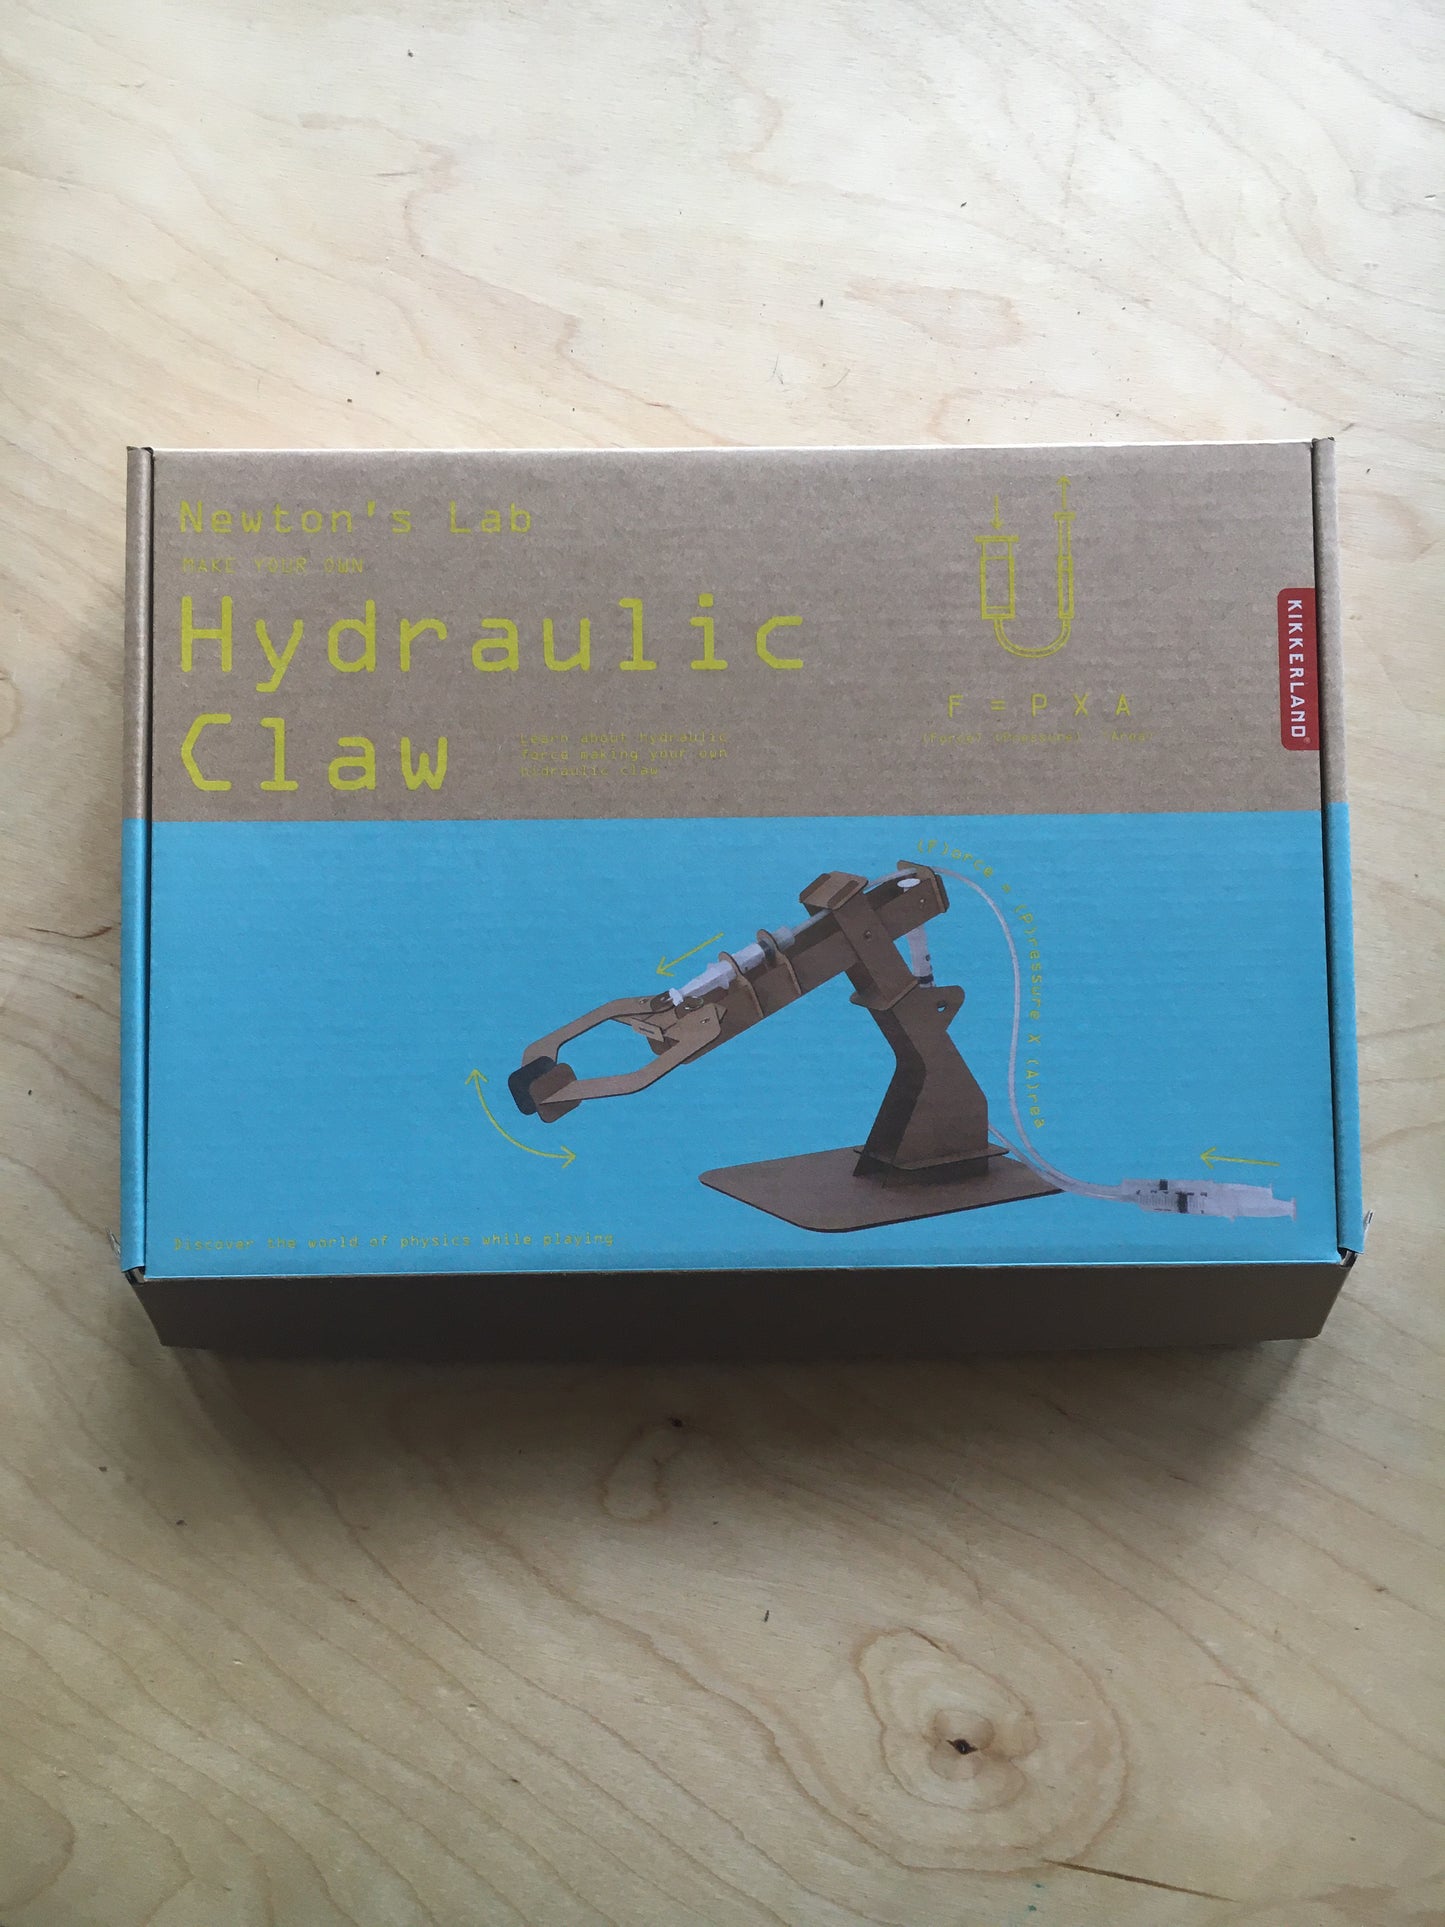 Hydraulic claw